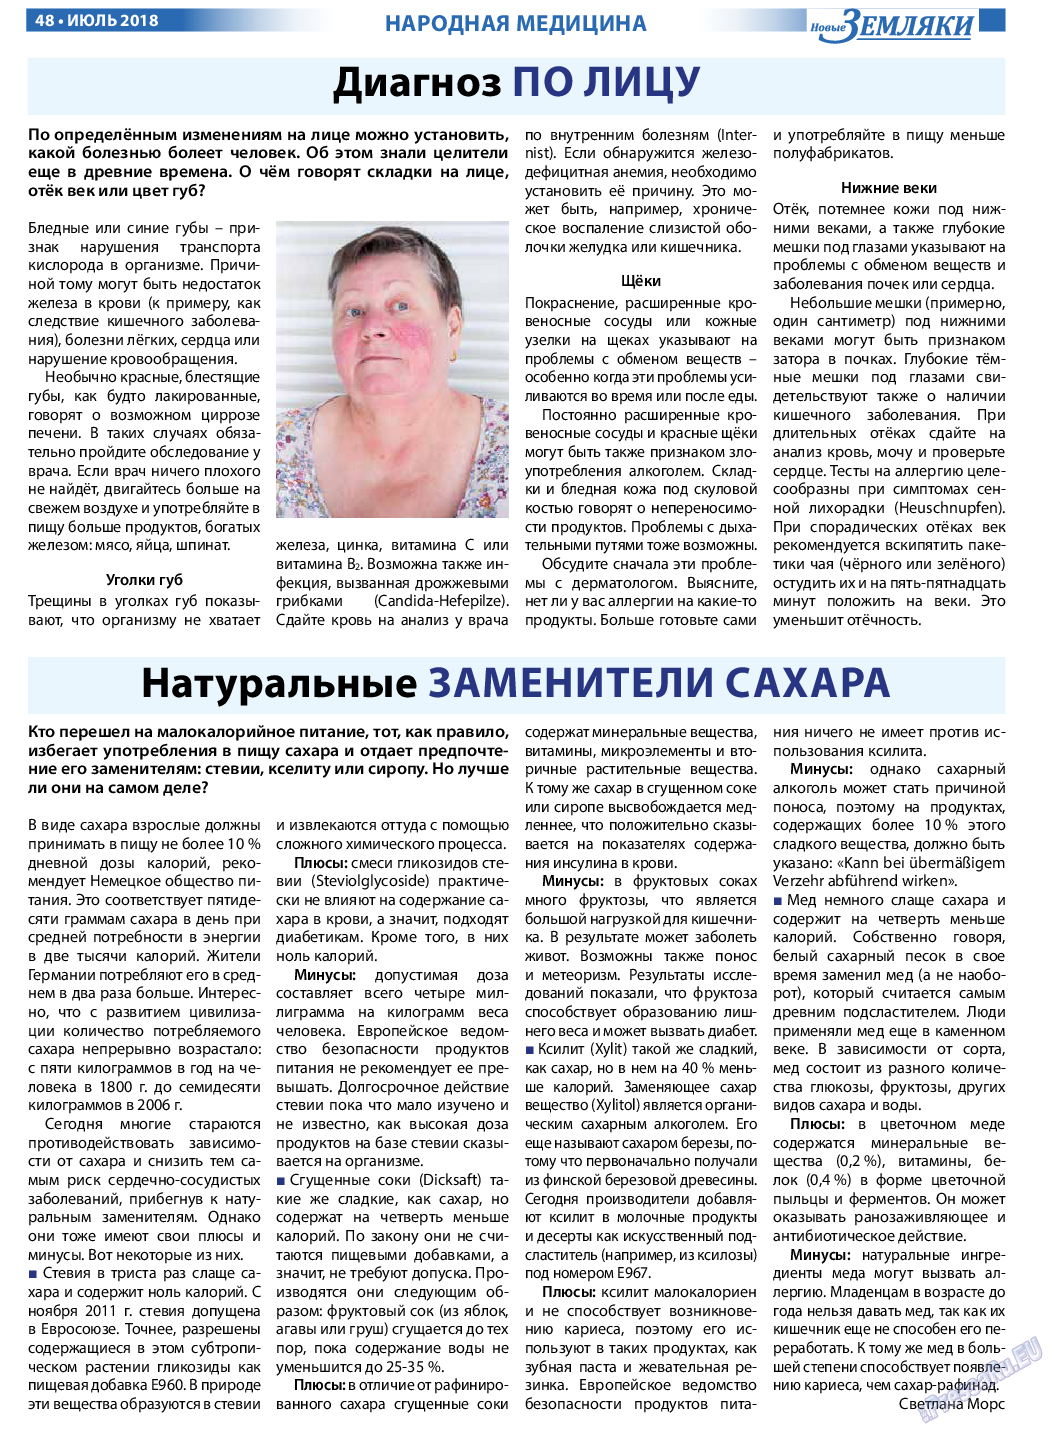 Новые Земляки, газета. 2018 №7 стр.48